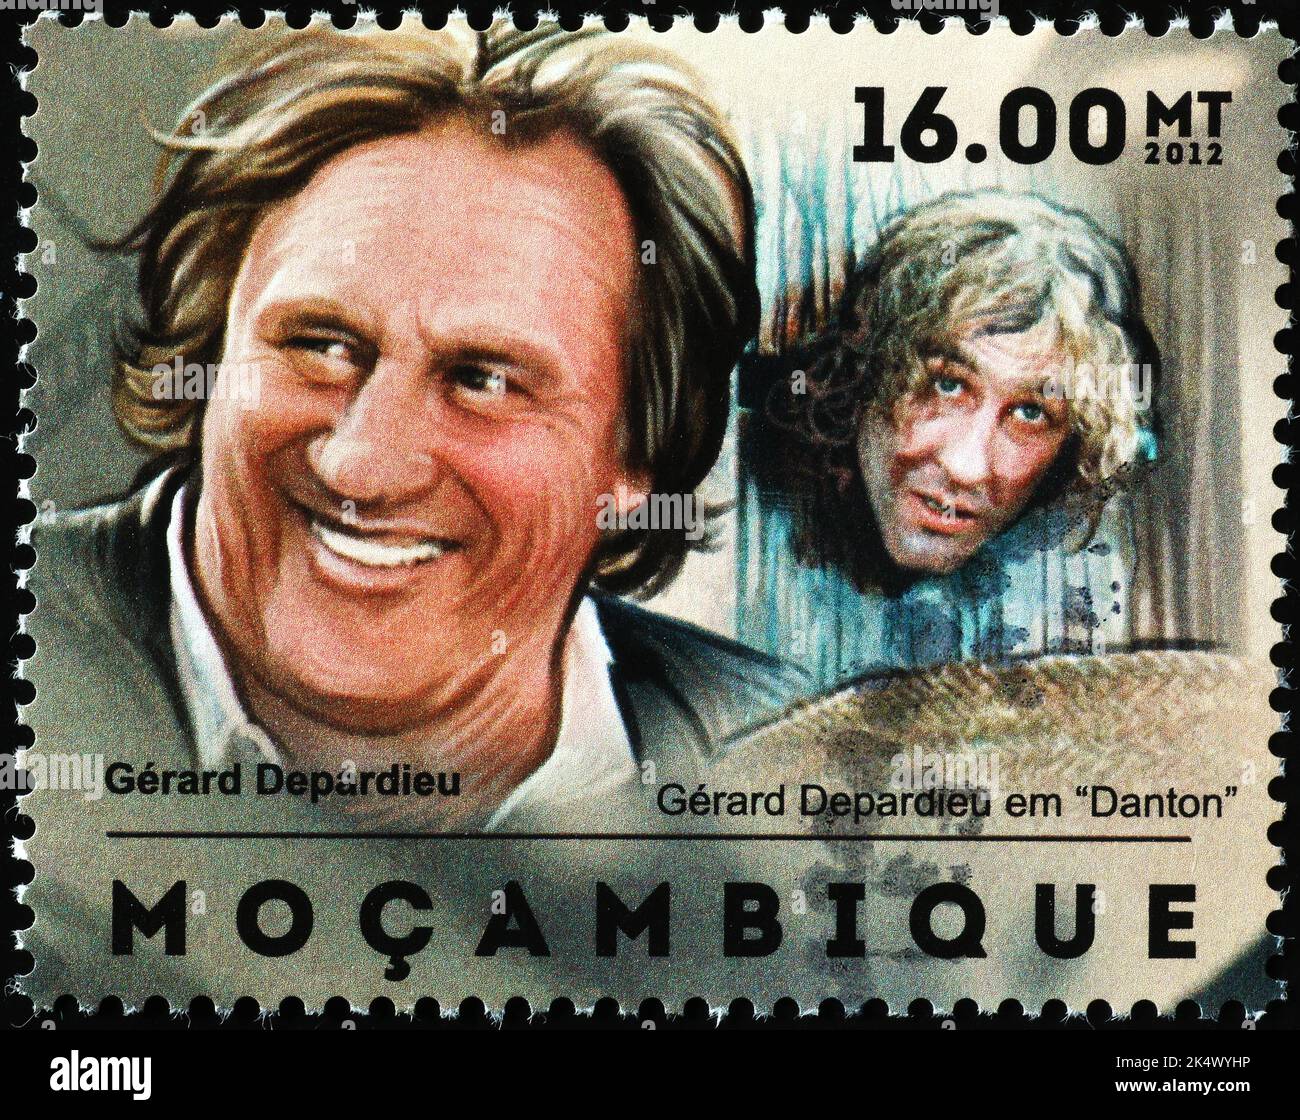 Portrait de Geard Depardieu sur timbre-poste du Mozambique Banque D'Images